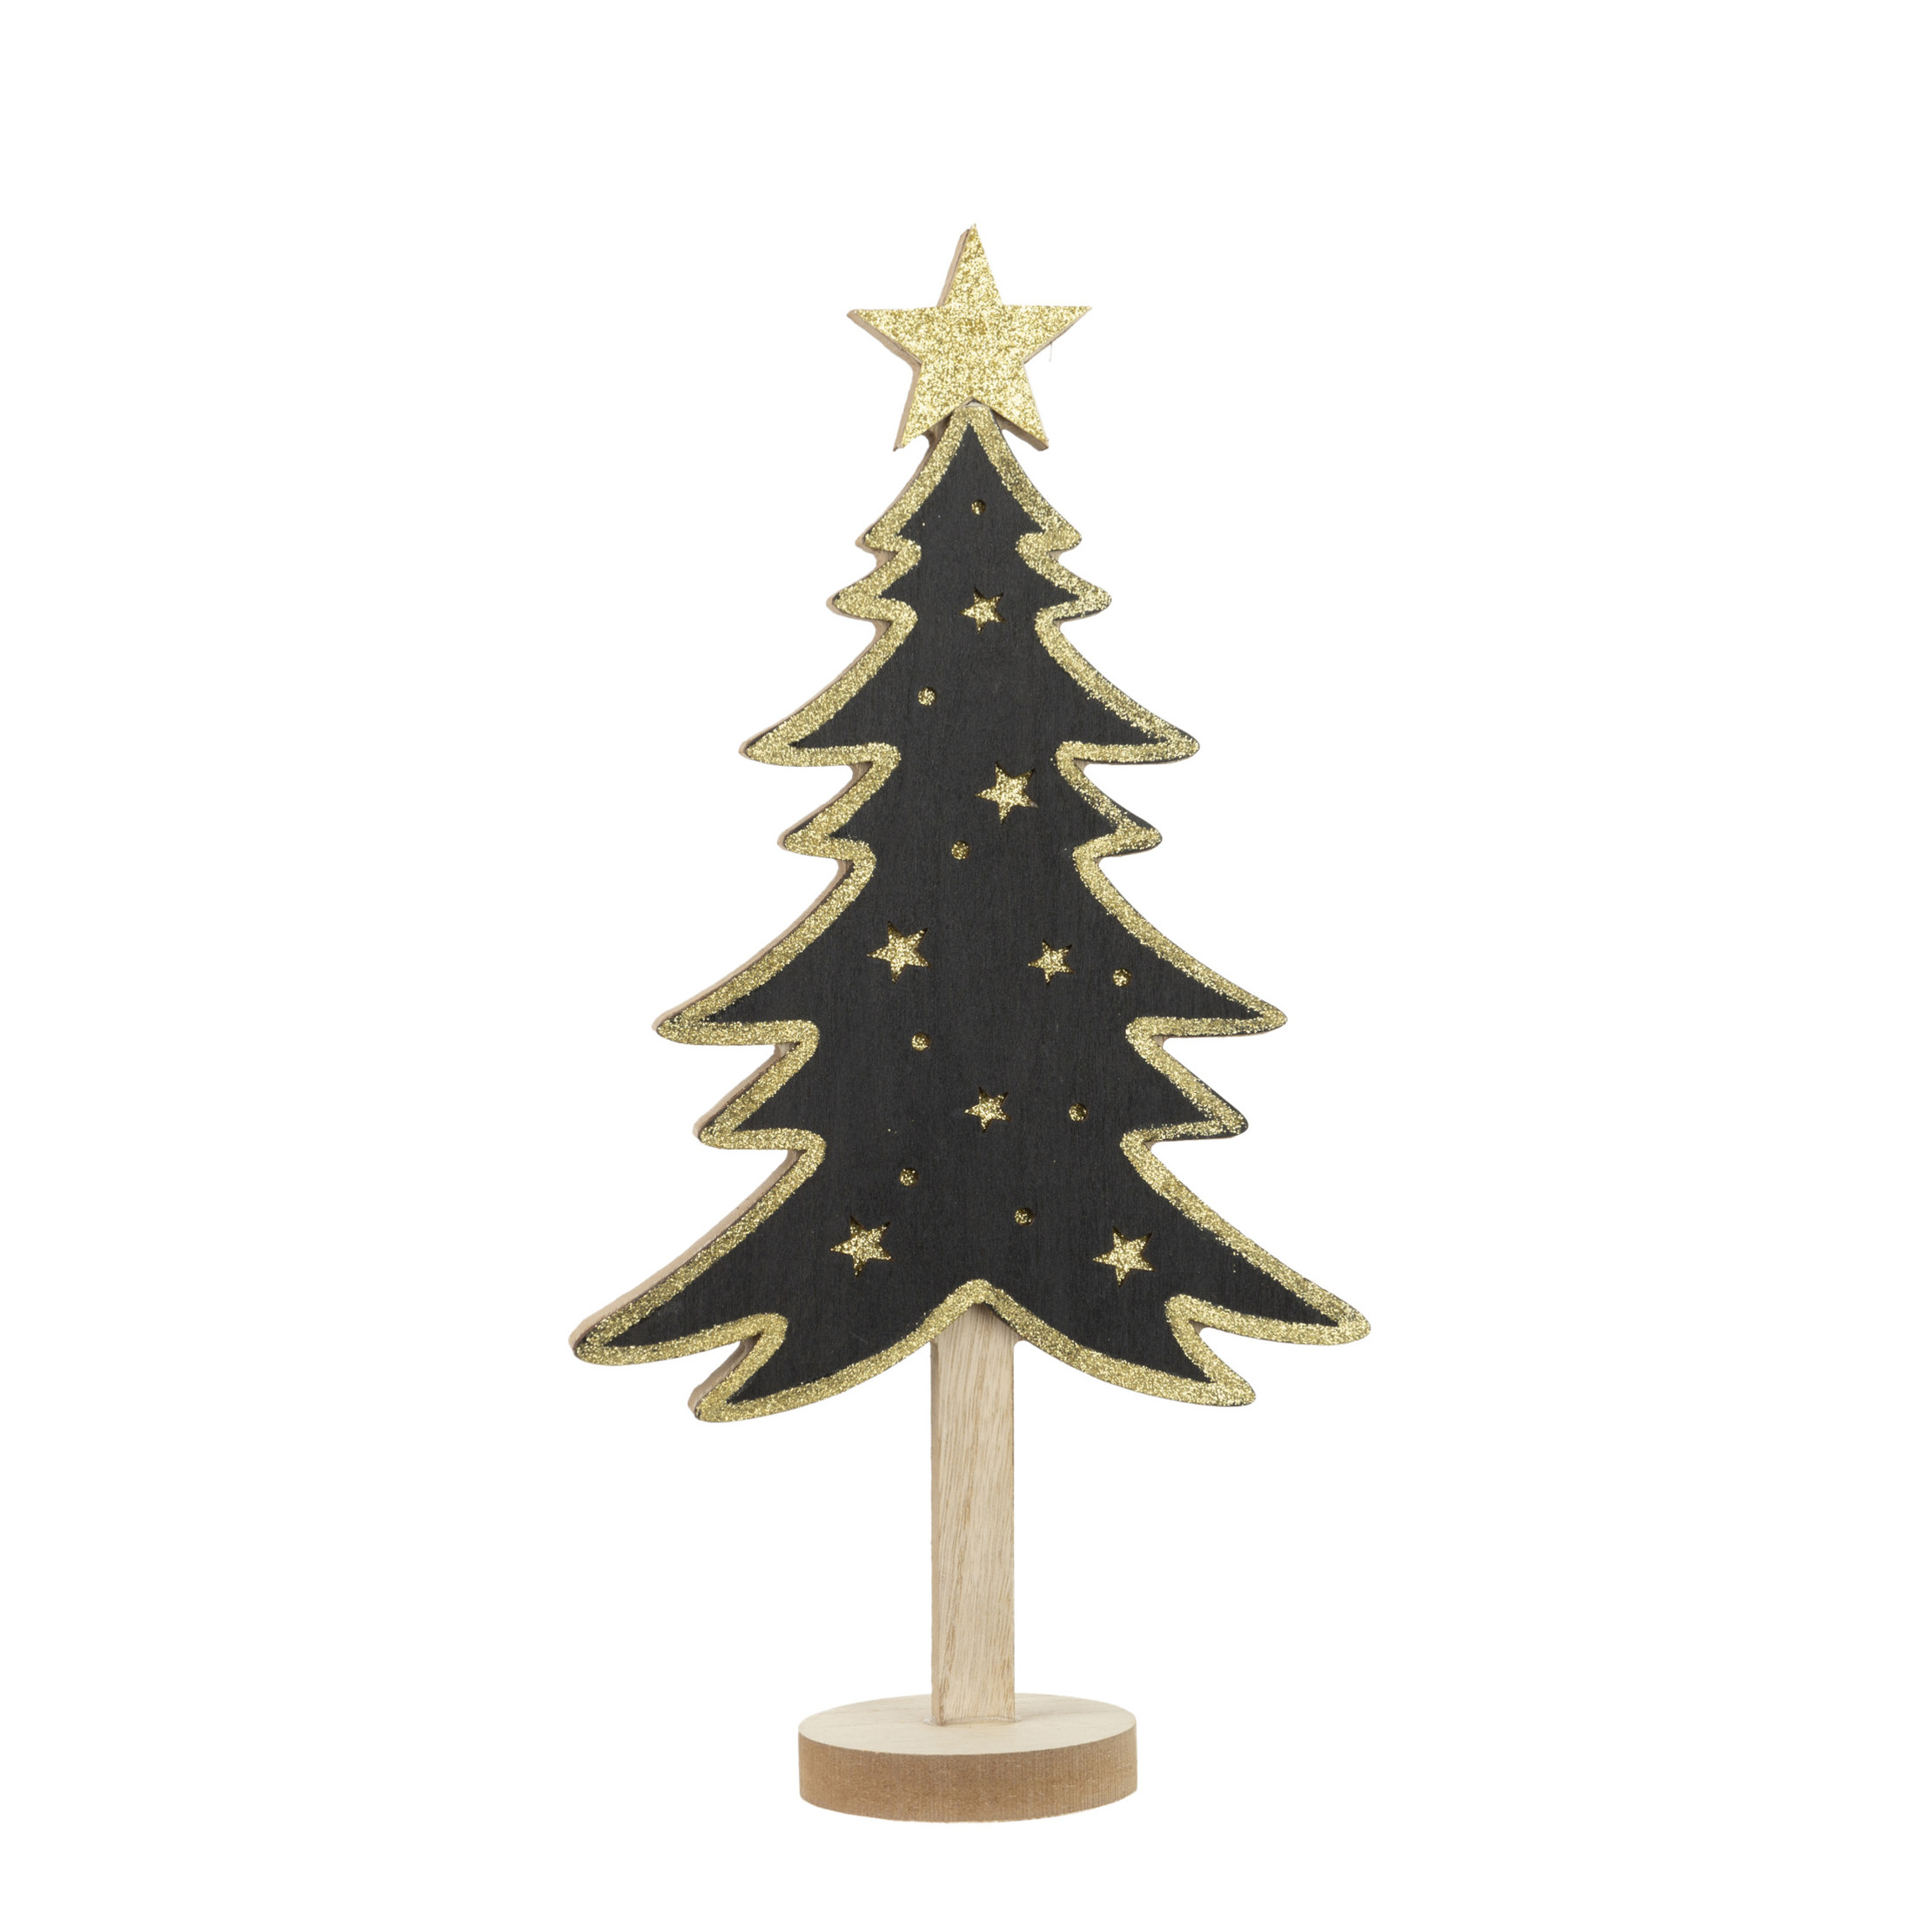 Kerstdecoratie houten decoratie kerstboom zwart met gouden sterren B18 x H36 cm